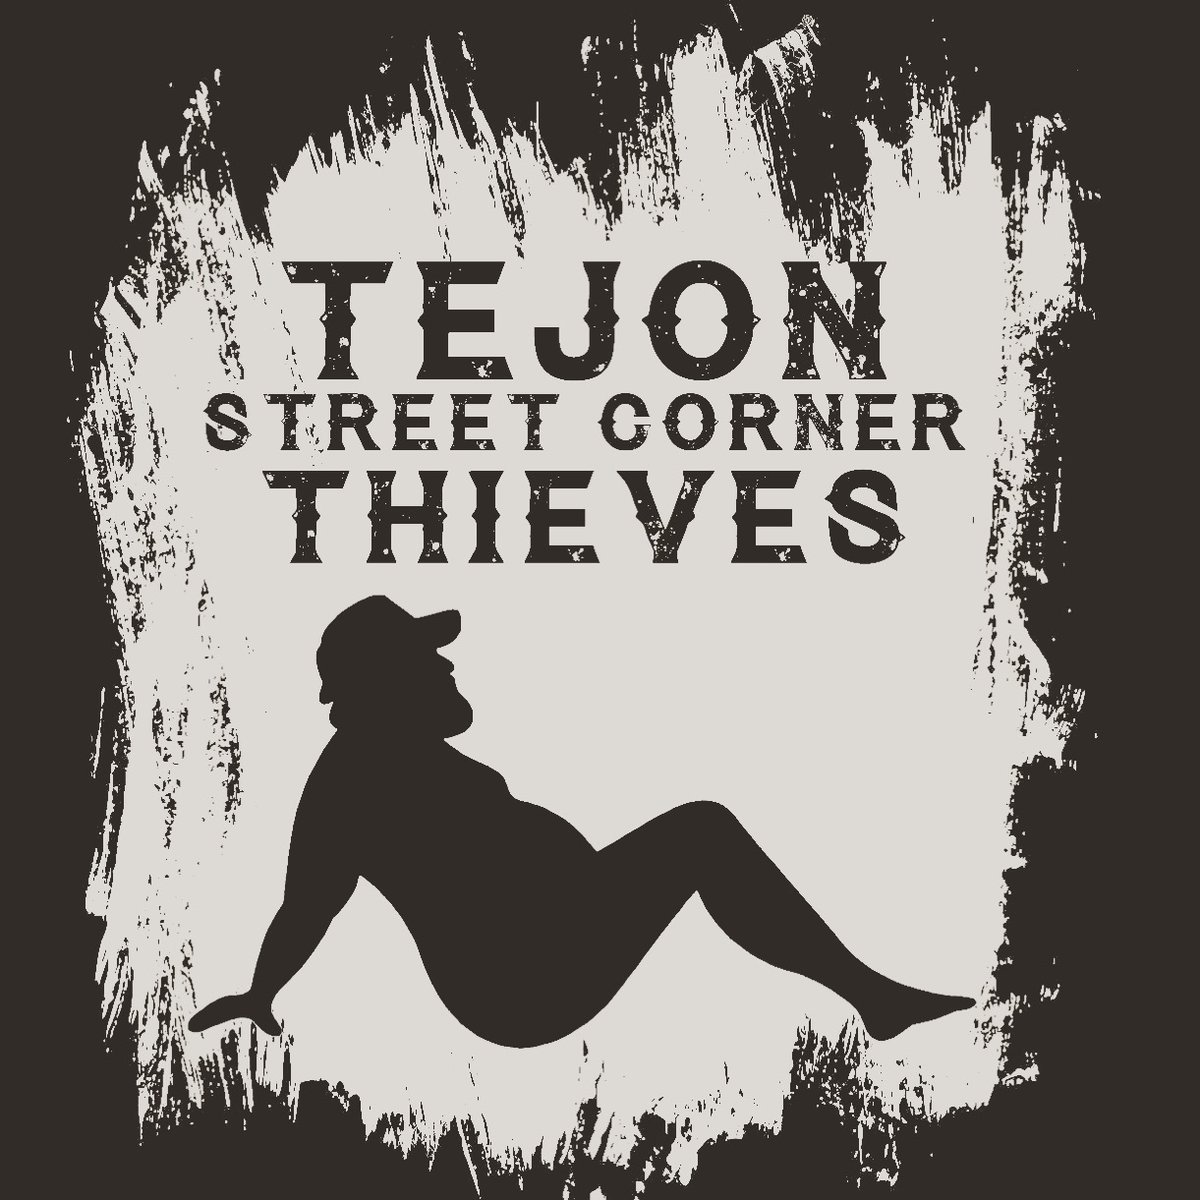 Street corner thieves. Tejon Street Corner Thieves. Tejon Street Corner Thieves Whiskey. Tejon Street Corner Thieves группа. Tejon Street Corner Thieves кто это.